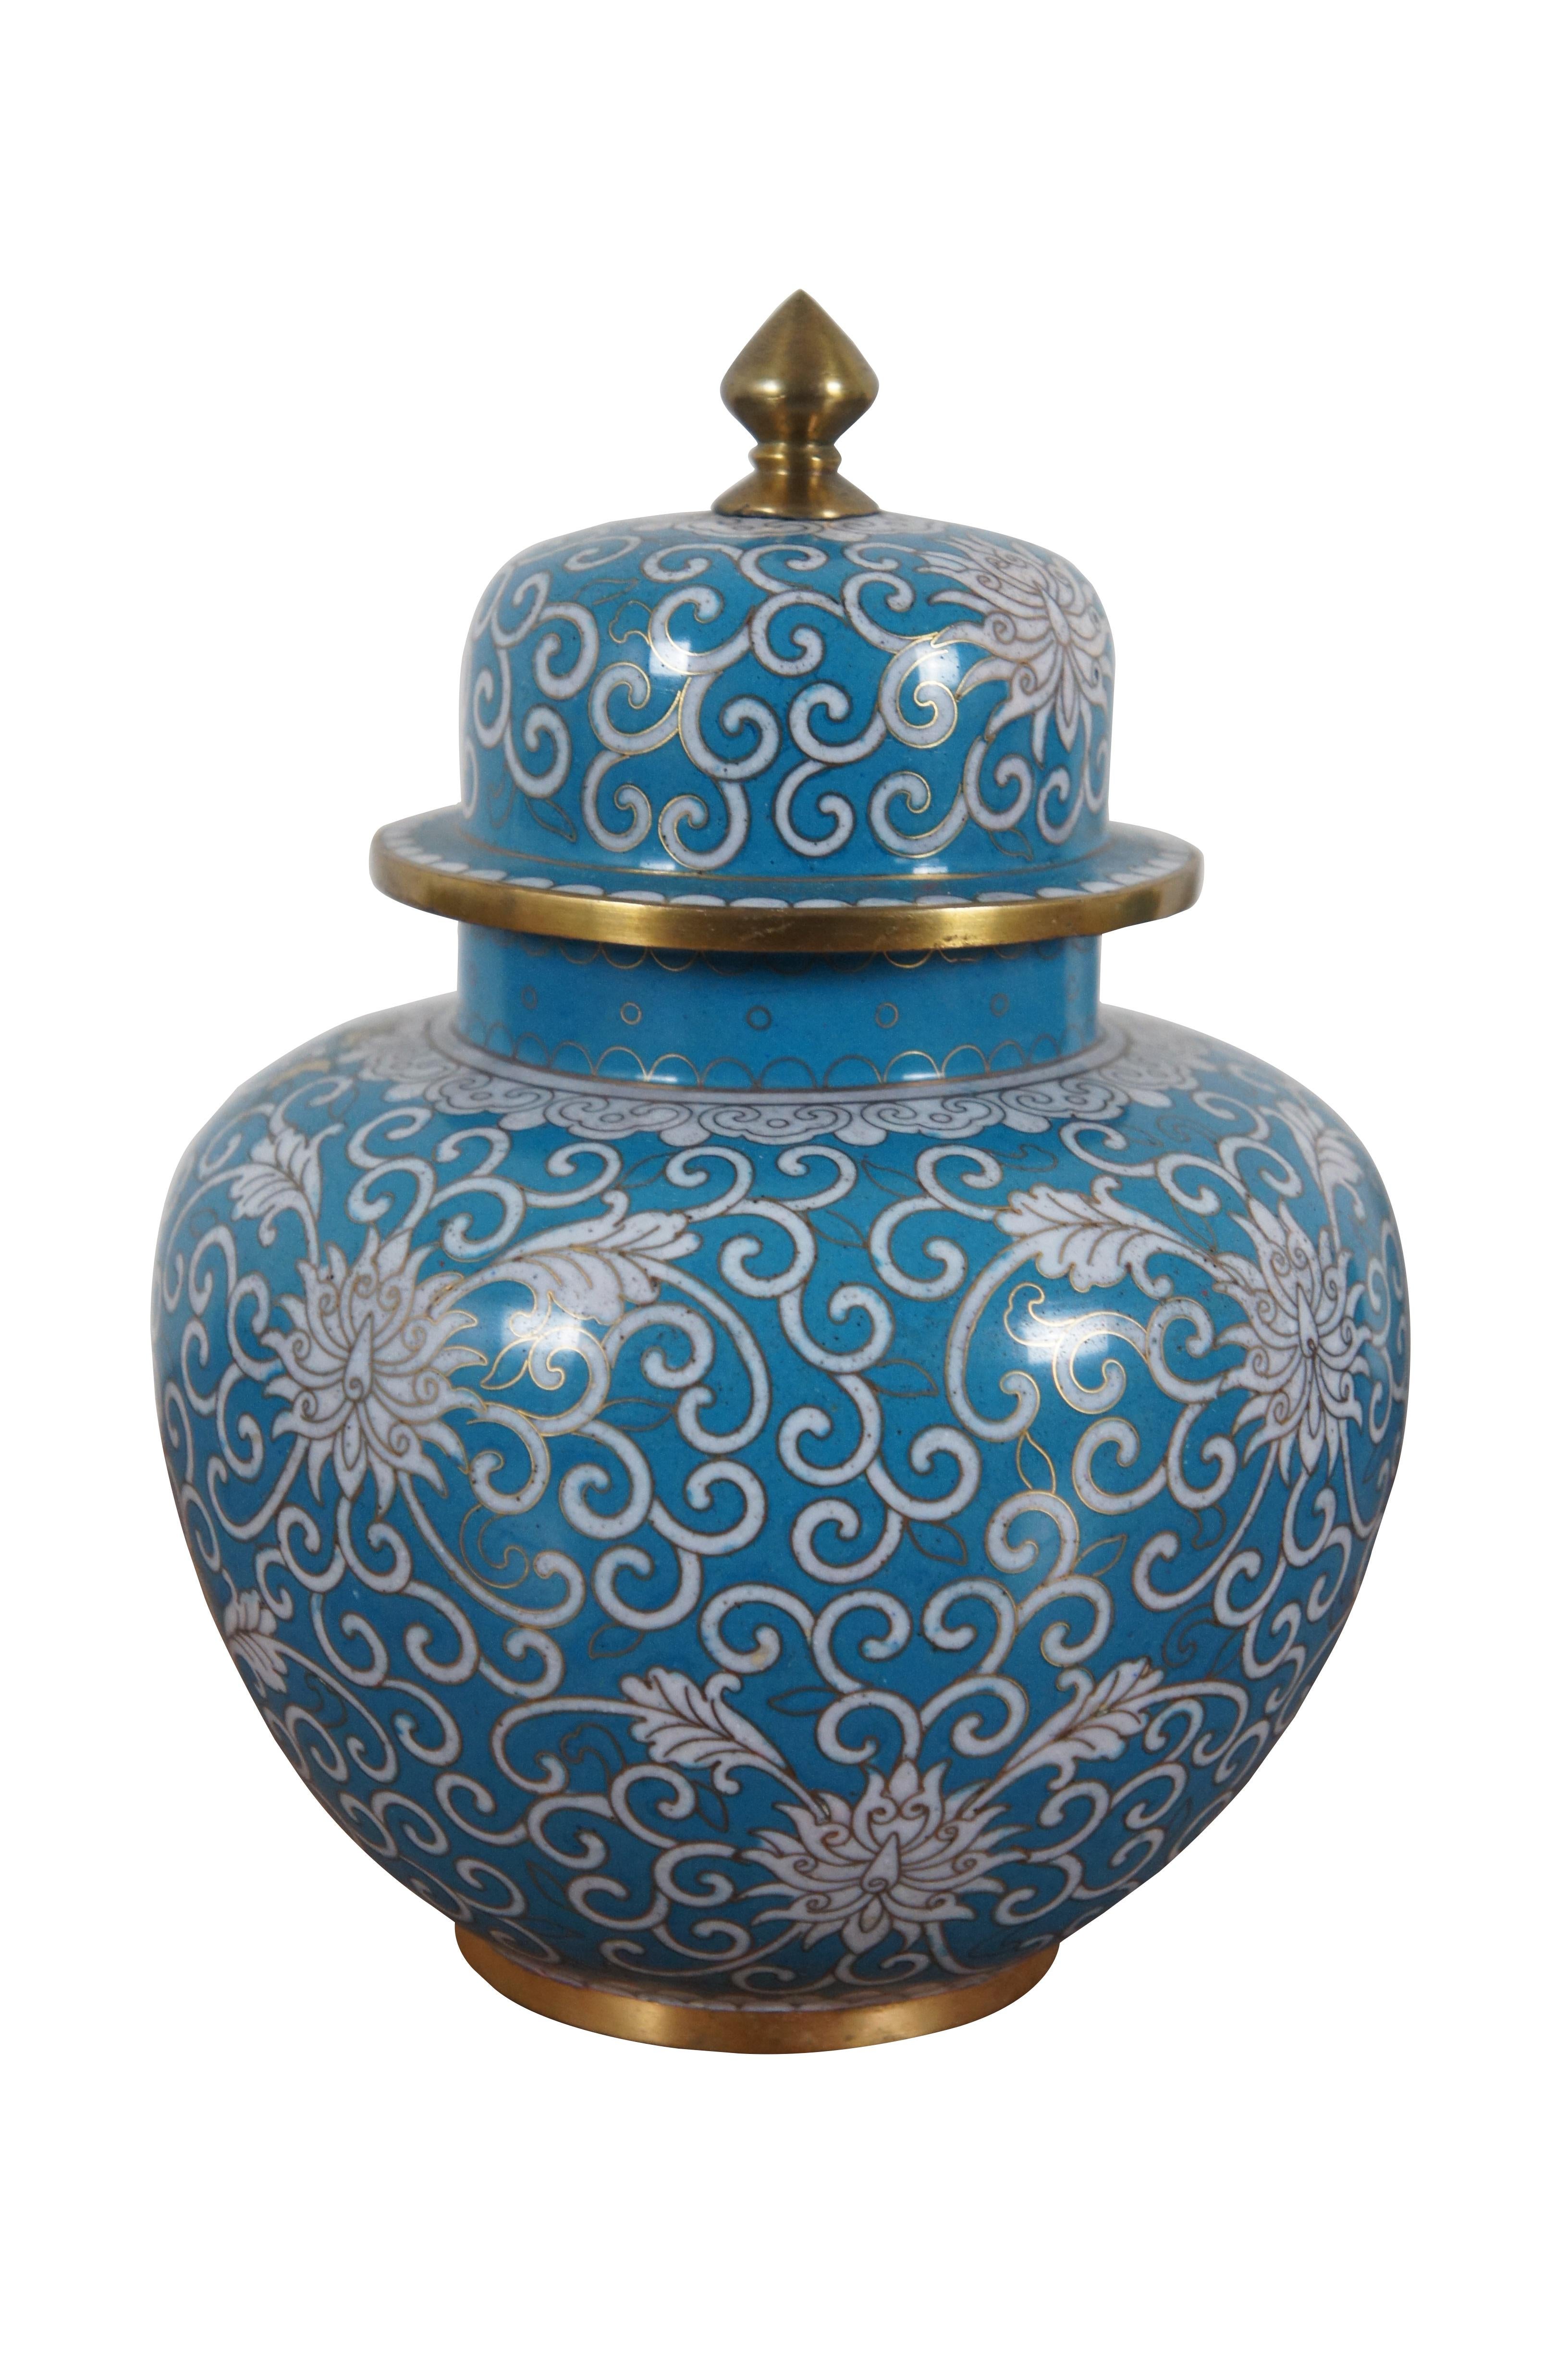 Chinoiseries 2 Antiquités Turquoise Cloisonné Chrysanthèmes Couvercle Ginger Jar Vase Urn Paire 8